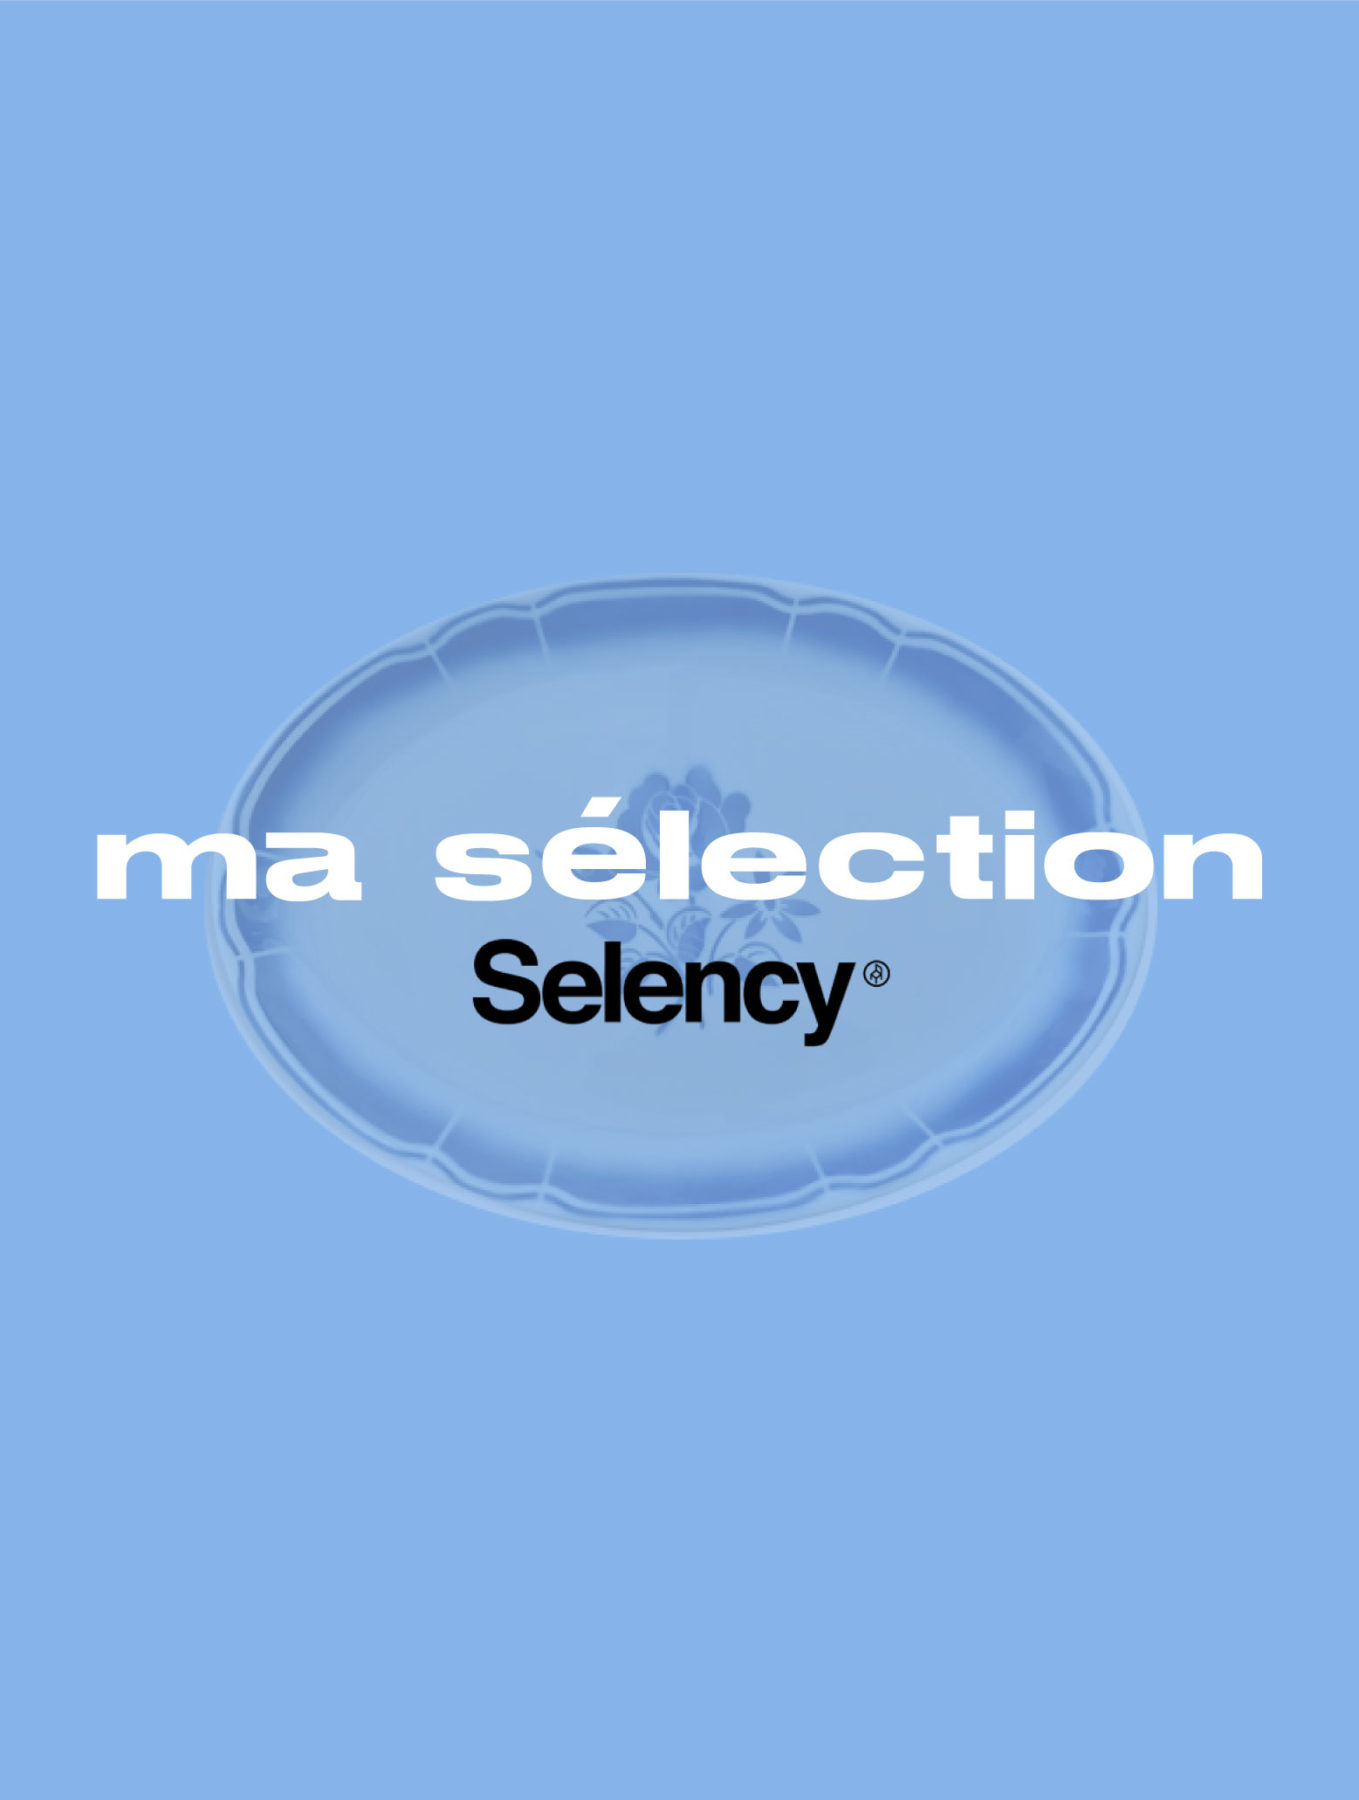 MA SELECTION SELENCY